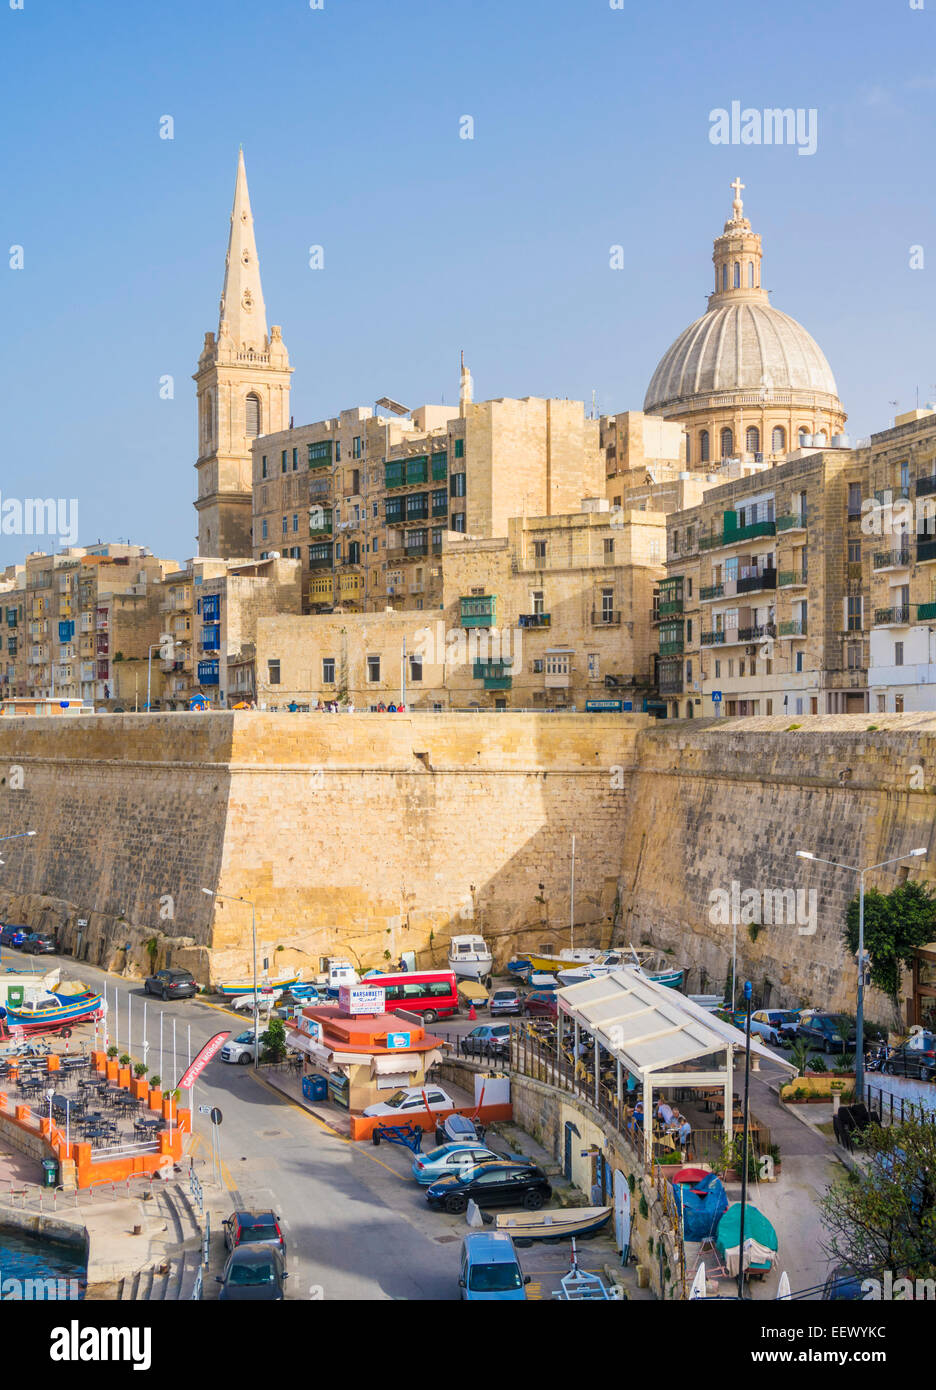 La valette avec le dôme de l'église des Carmes et St Pauls Cathédrale anglicane La Valette Malte eu Europe Banque D'Images